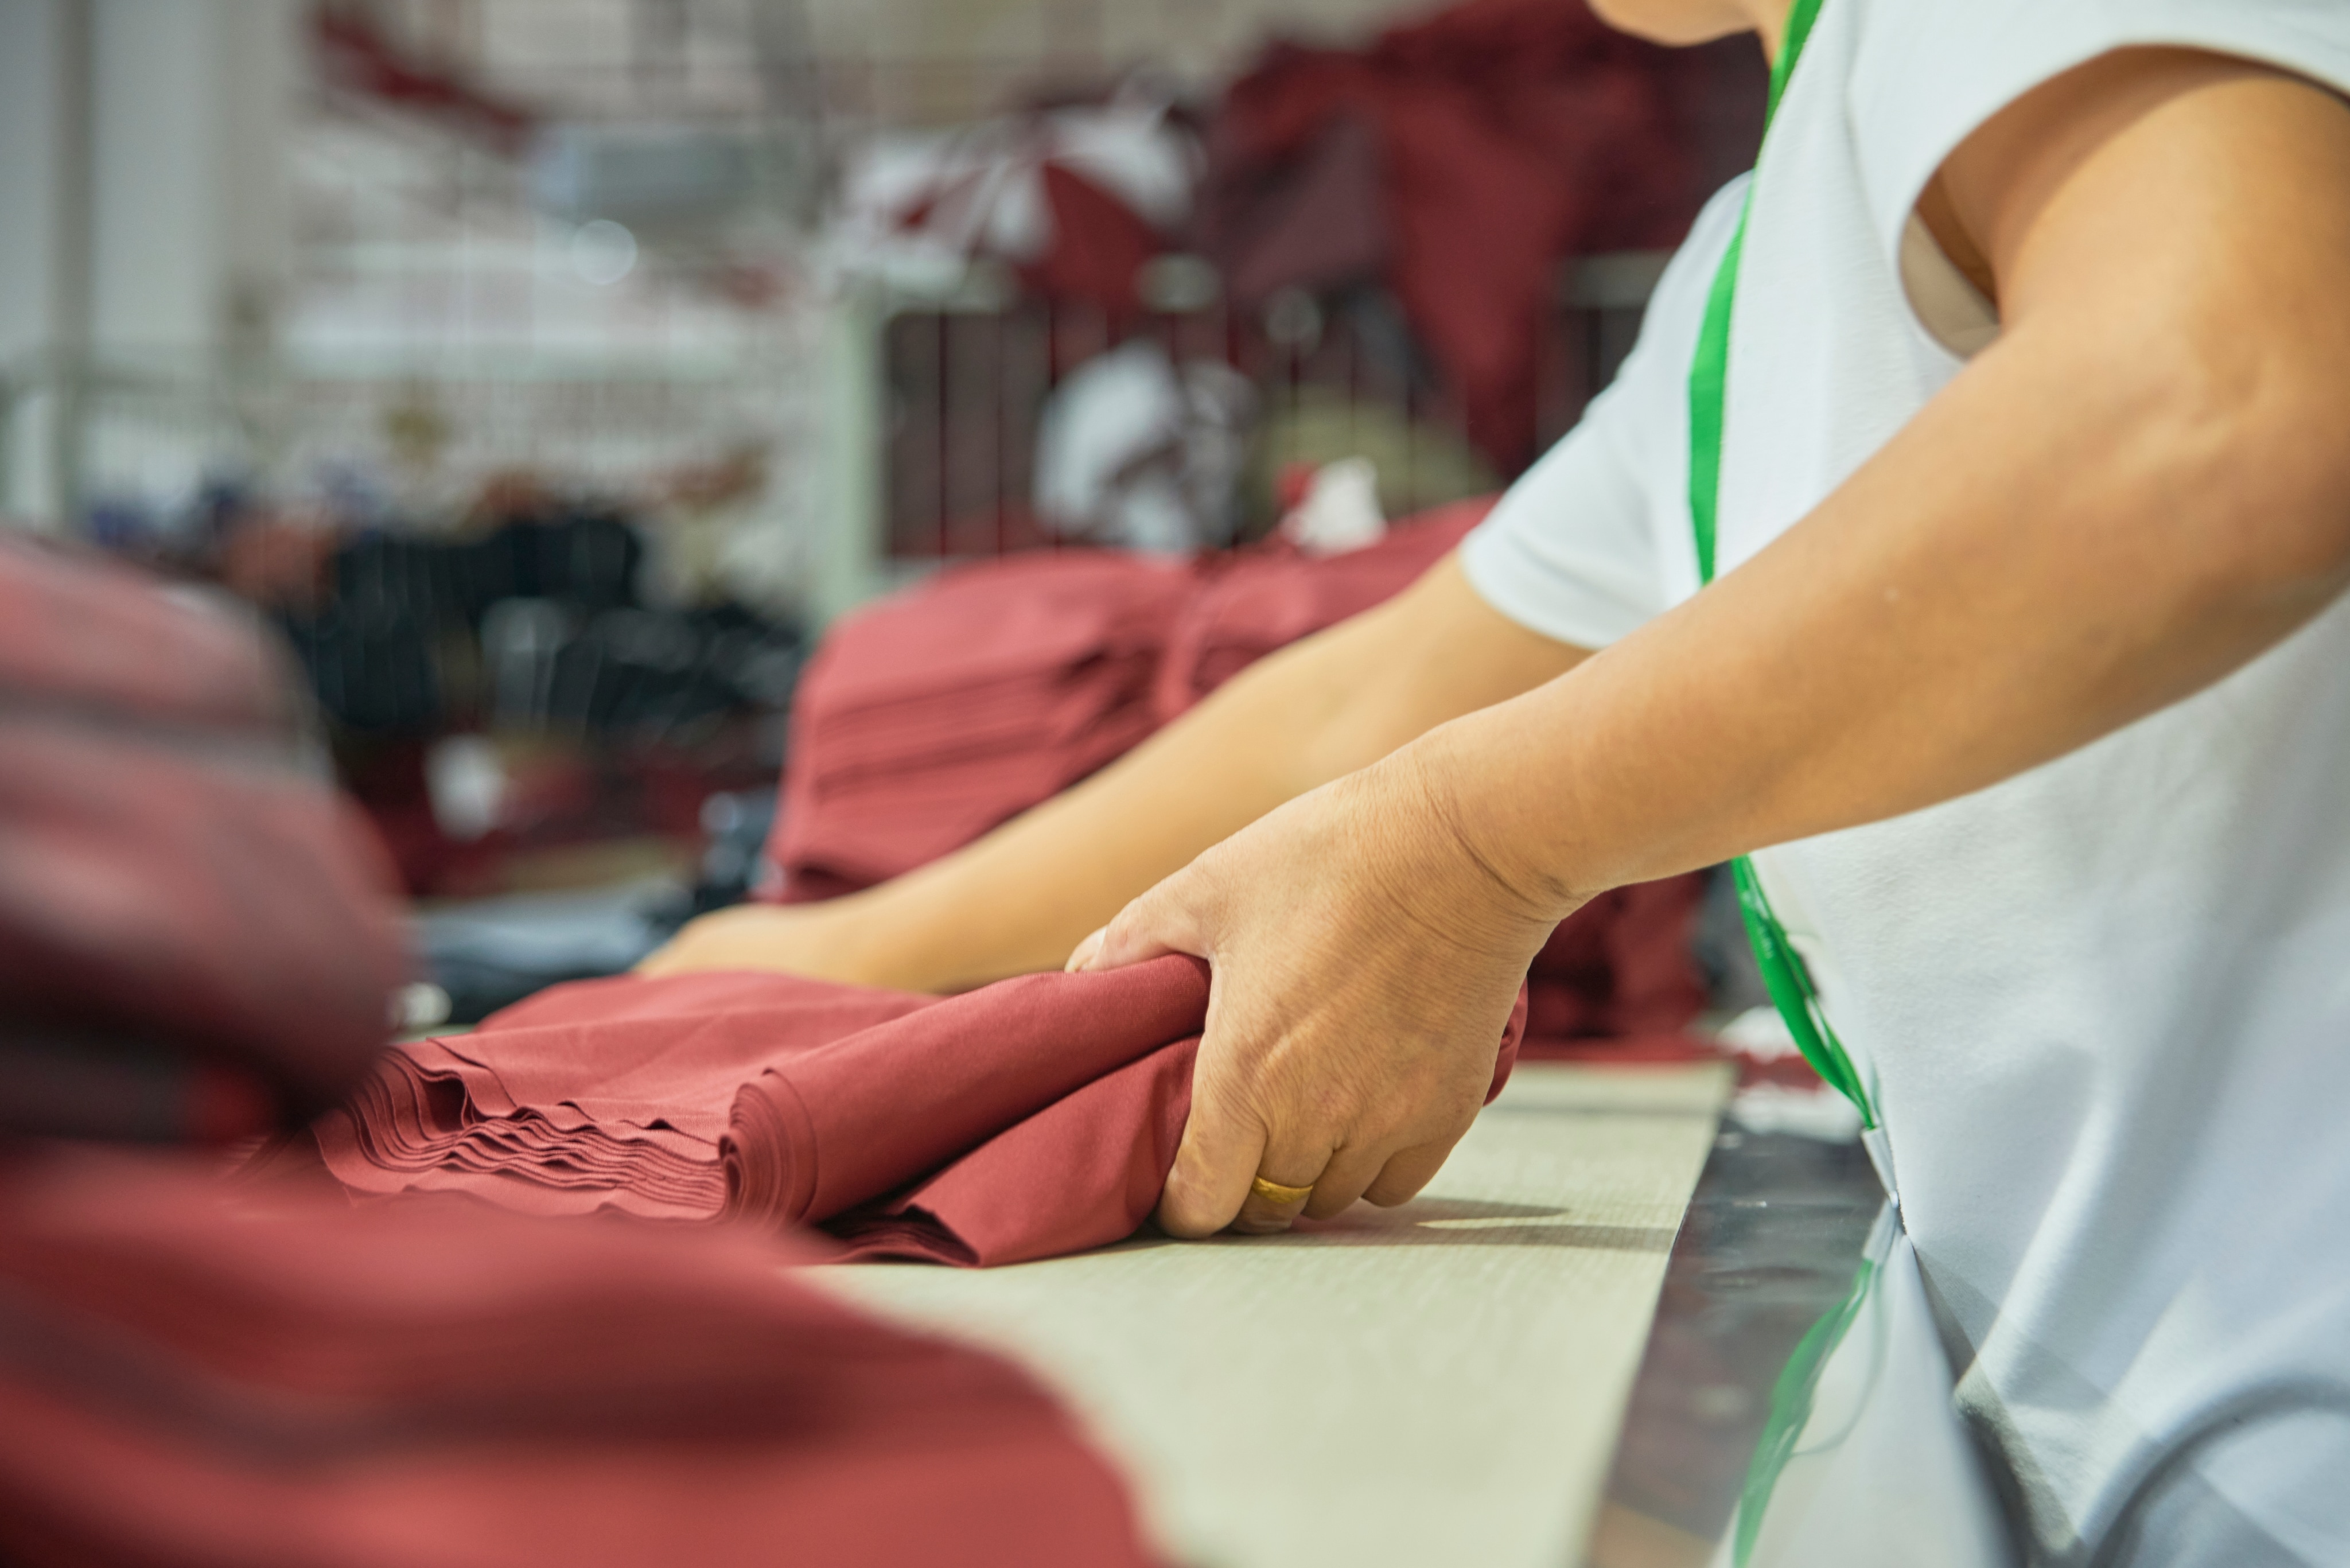 Un ouvrier d’une usine de vêtements place du tissu rouge plié sur une table. D’autres piles de tissu rouge se trouvent à proximité.